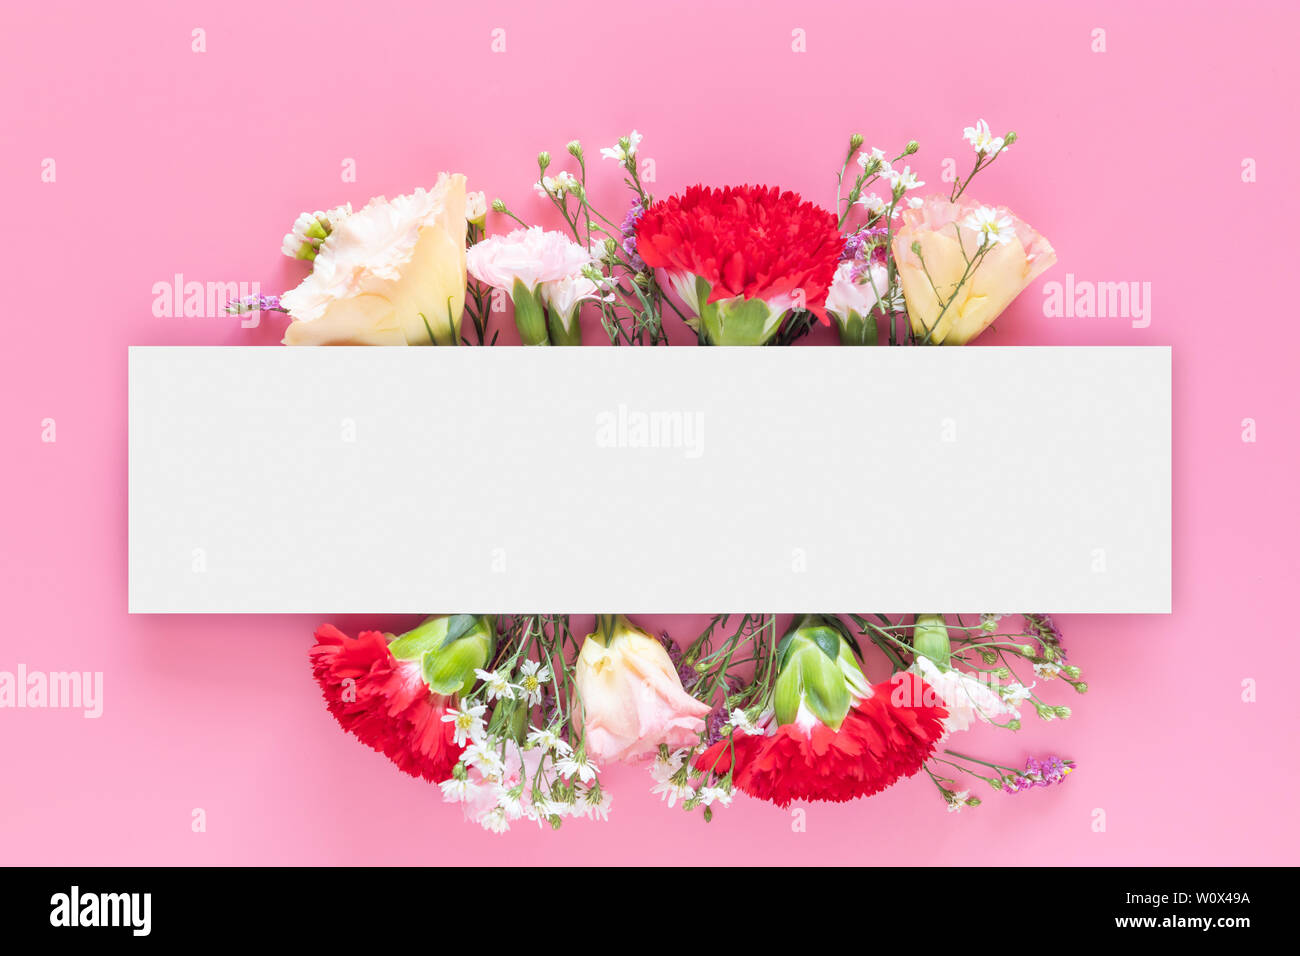 Kreative Gestaltung mit frischen bunten Frühling Blumen auf hell rosa Hintergrund mit weißen Rechteck bar banner Label. Hochzeit Einladung, Poster o Stockfoto